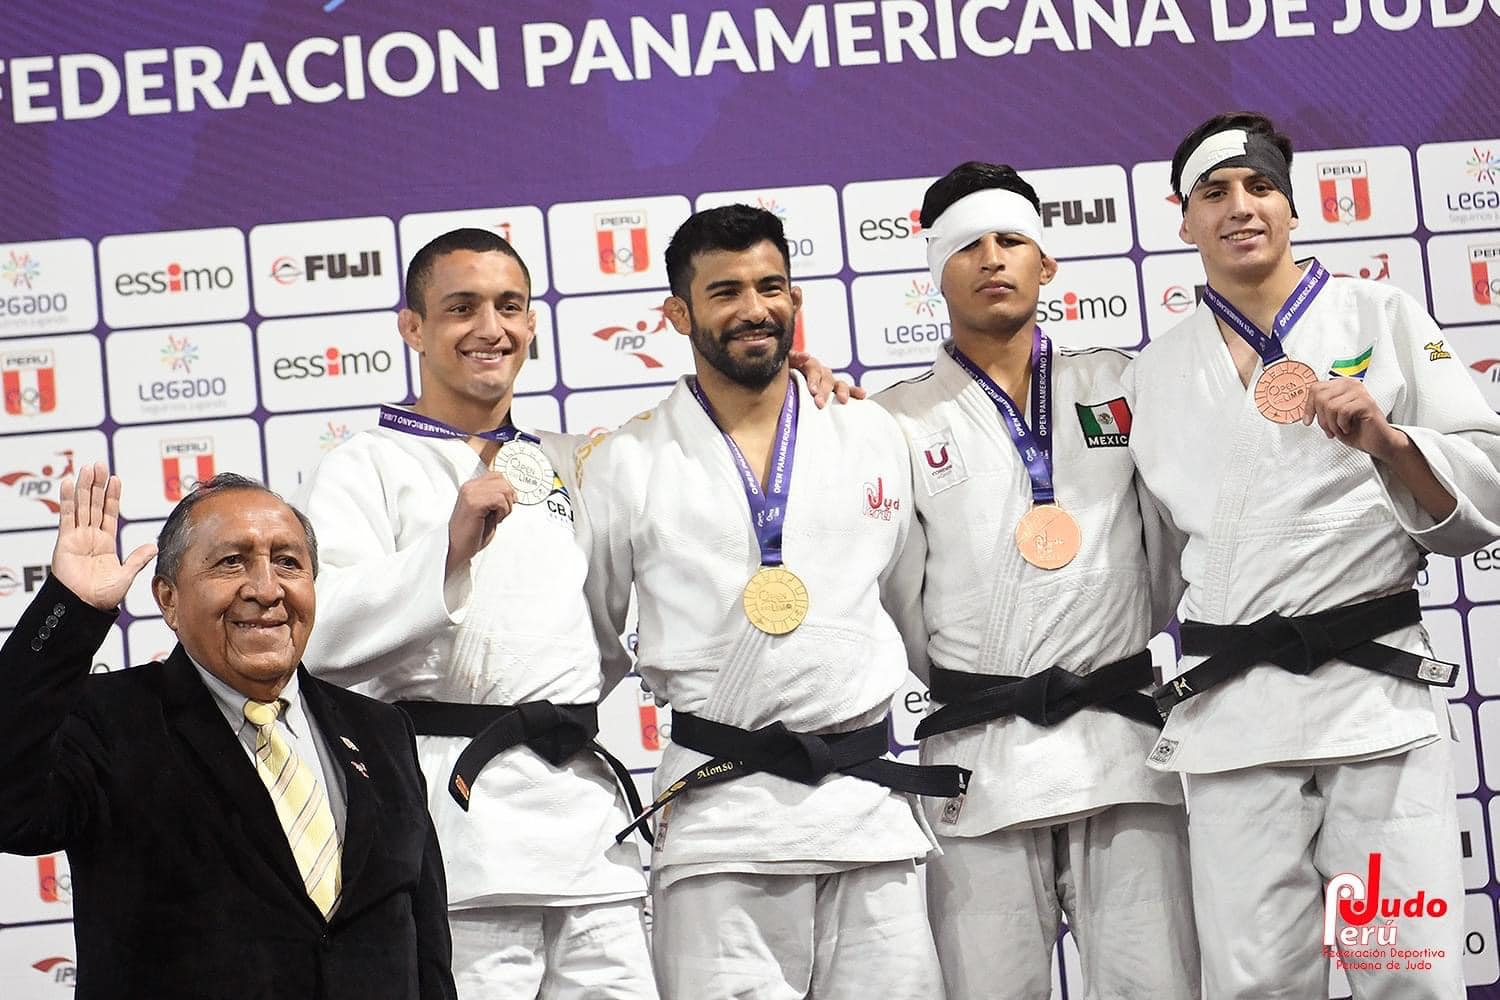 Judoca queretano concluye gira panamericana con tres medallas